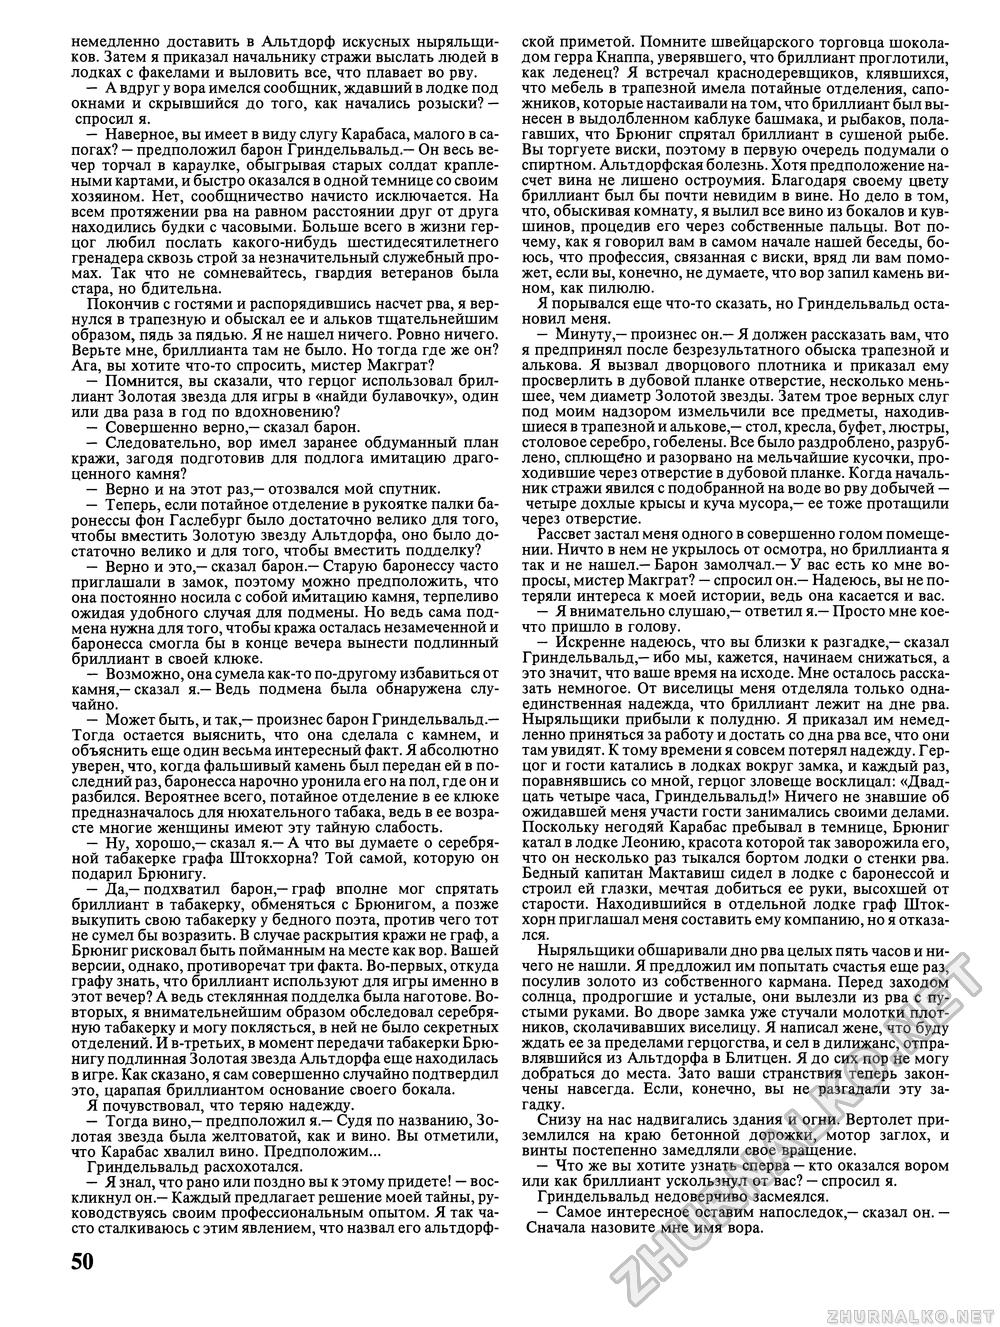 Вокруг света 1993-05, страница 52